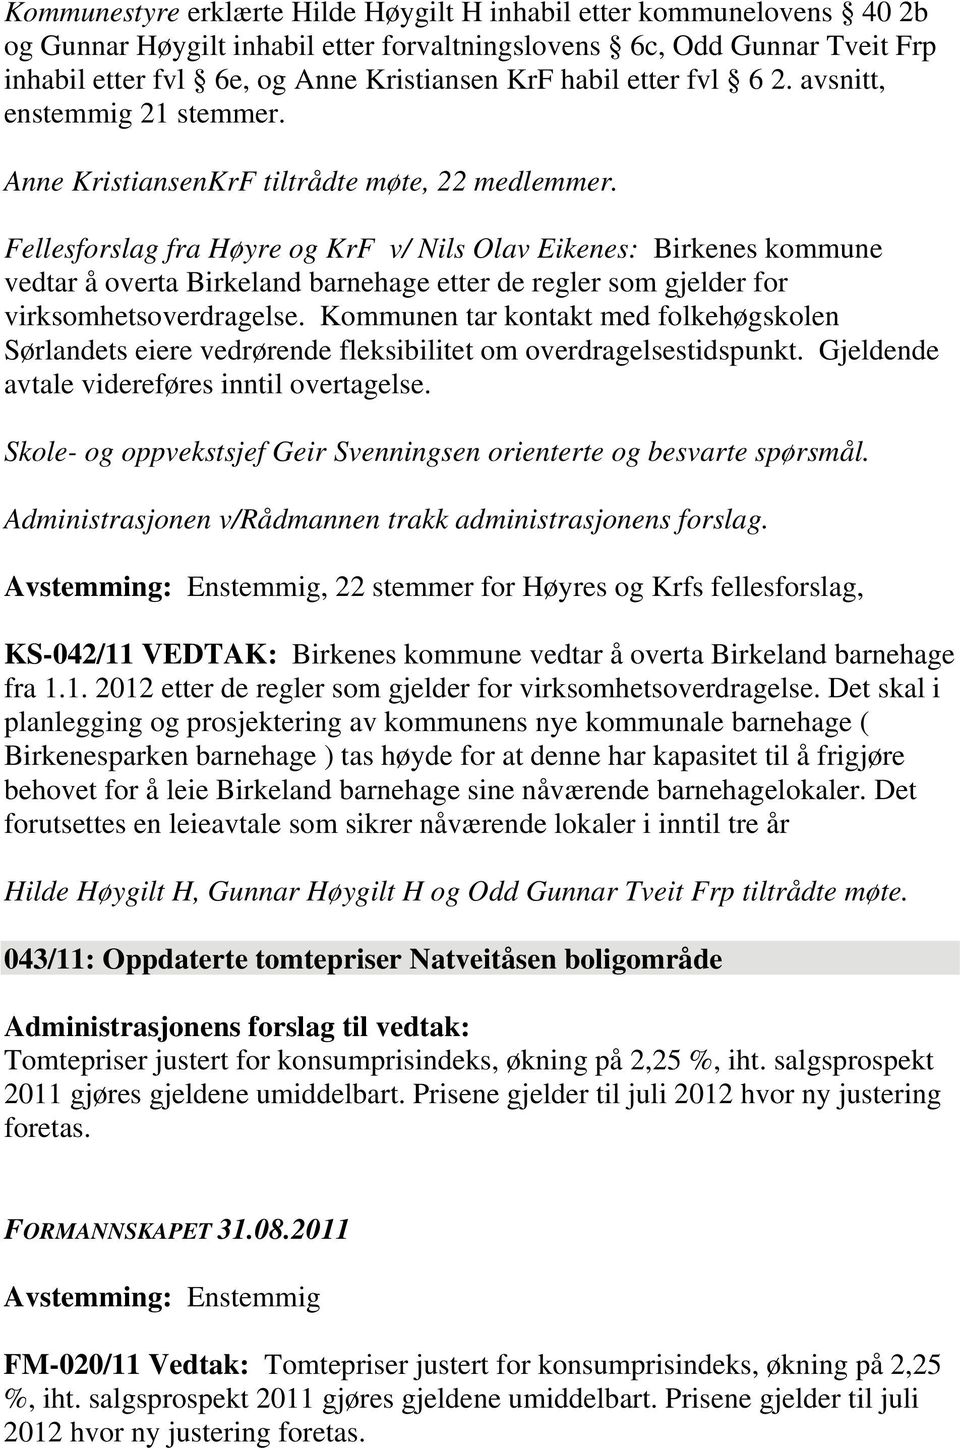 Fellesforslag fra Høyre og KrF v/ Nils Olav Eikenes: Birkenes kommune vedtar å overta Birkeland barnehage etter de regler som gjelder for virksomhetsoverdragelse.